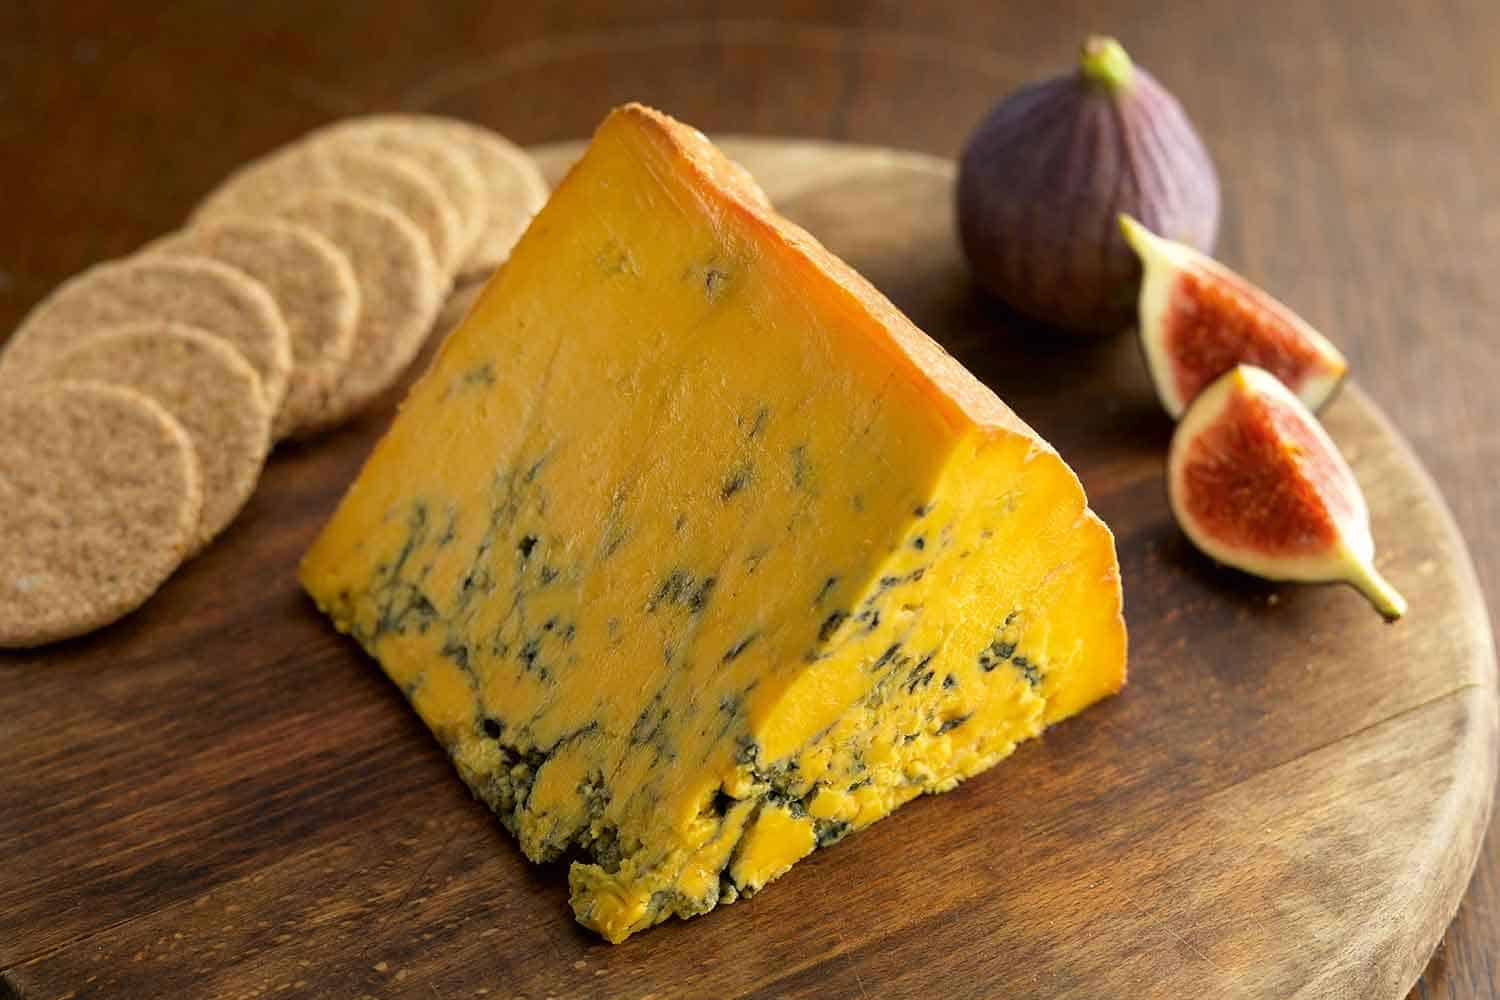 Colston-Bassett-Shropshire-Blue-Cheese